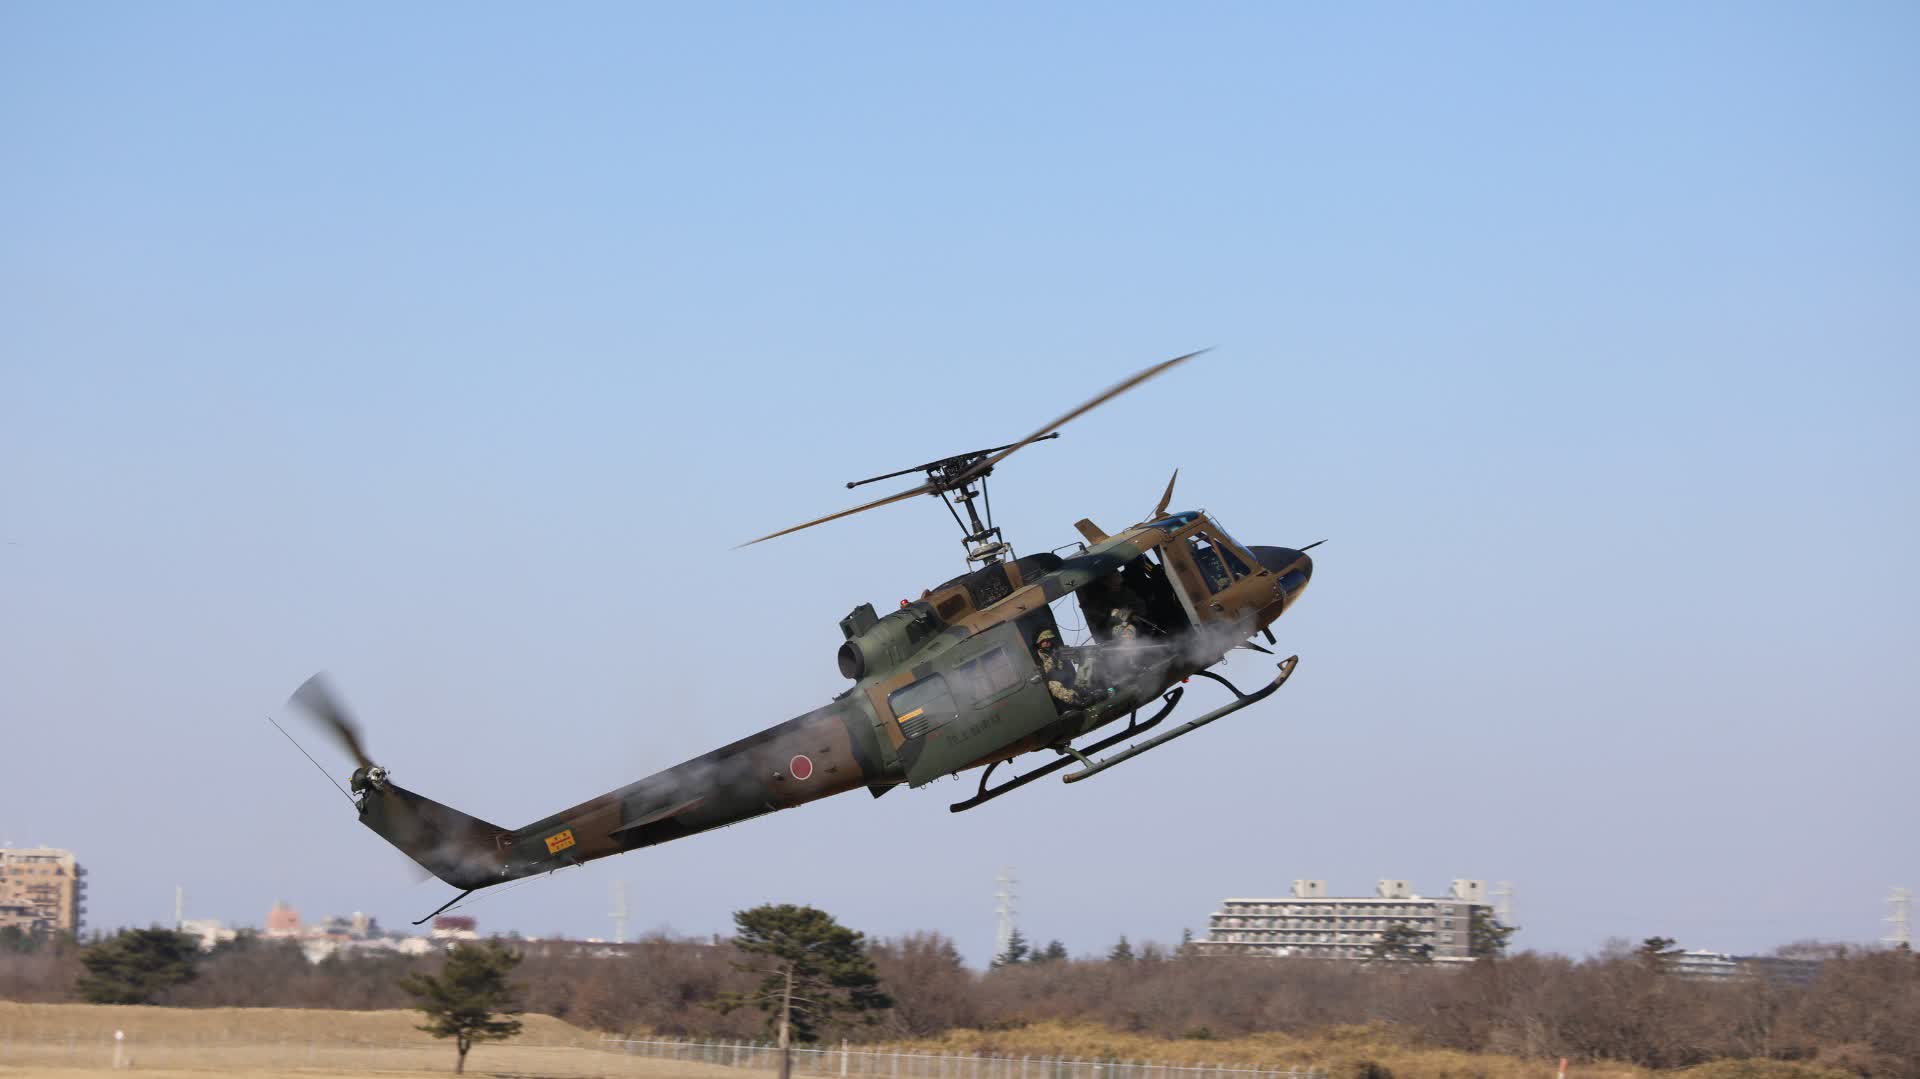 日本海上自衛隊直升機墜毀事故中7名失蹤者被推定身亡